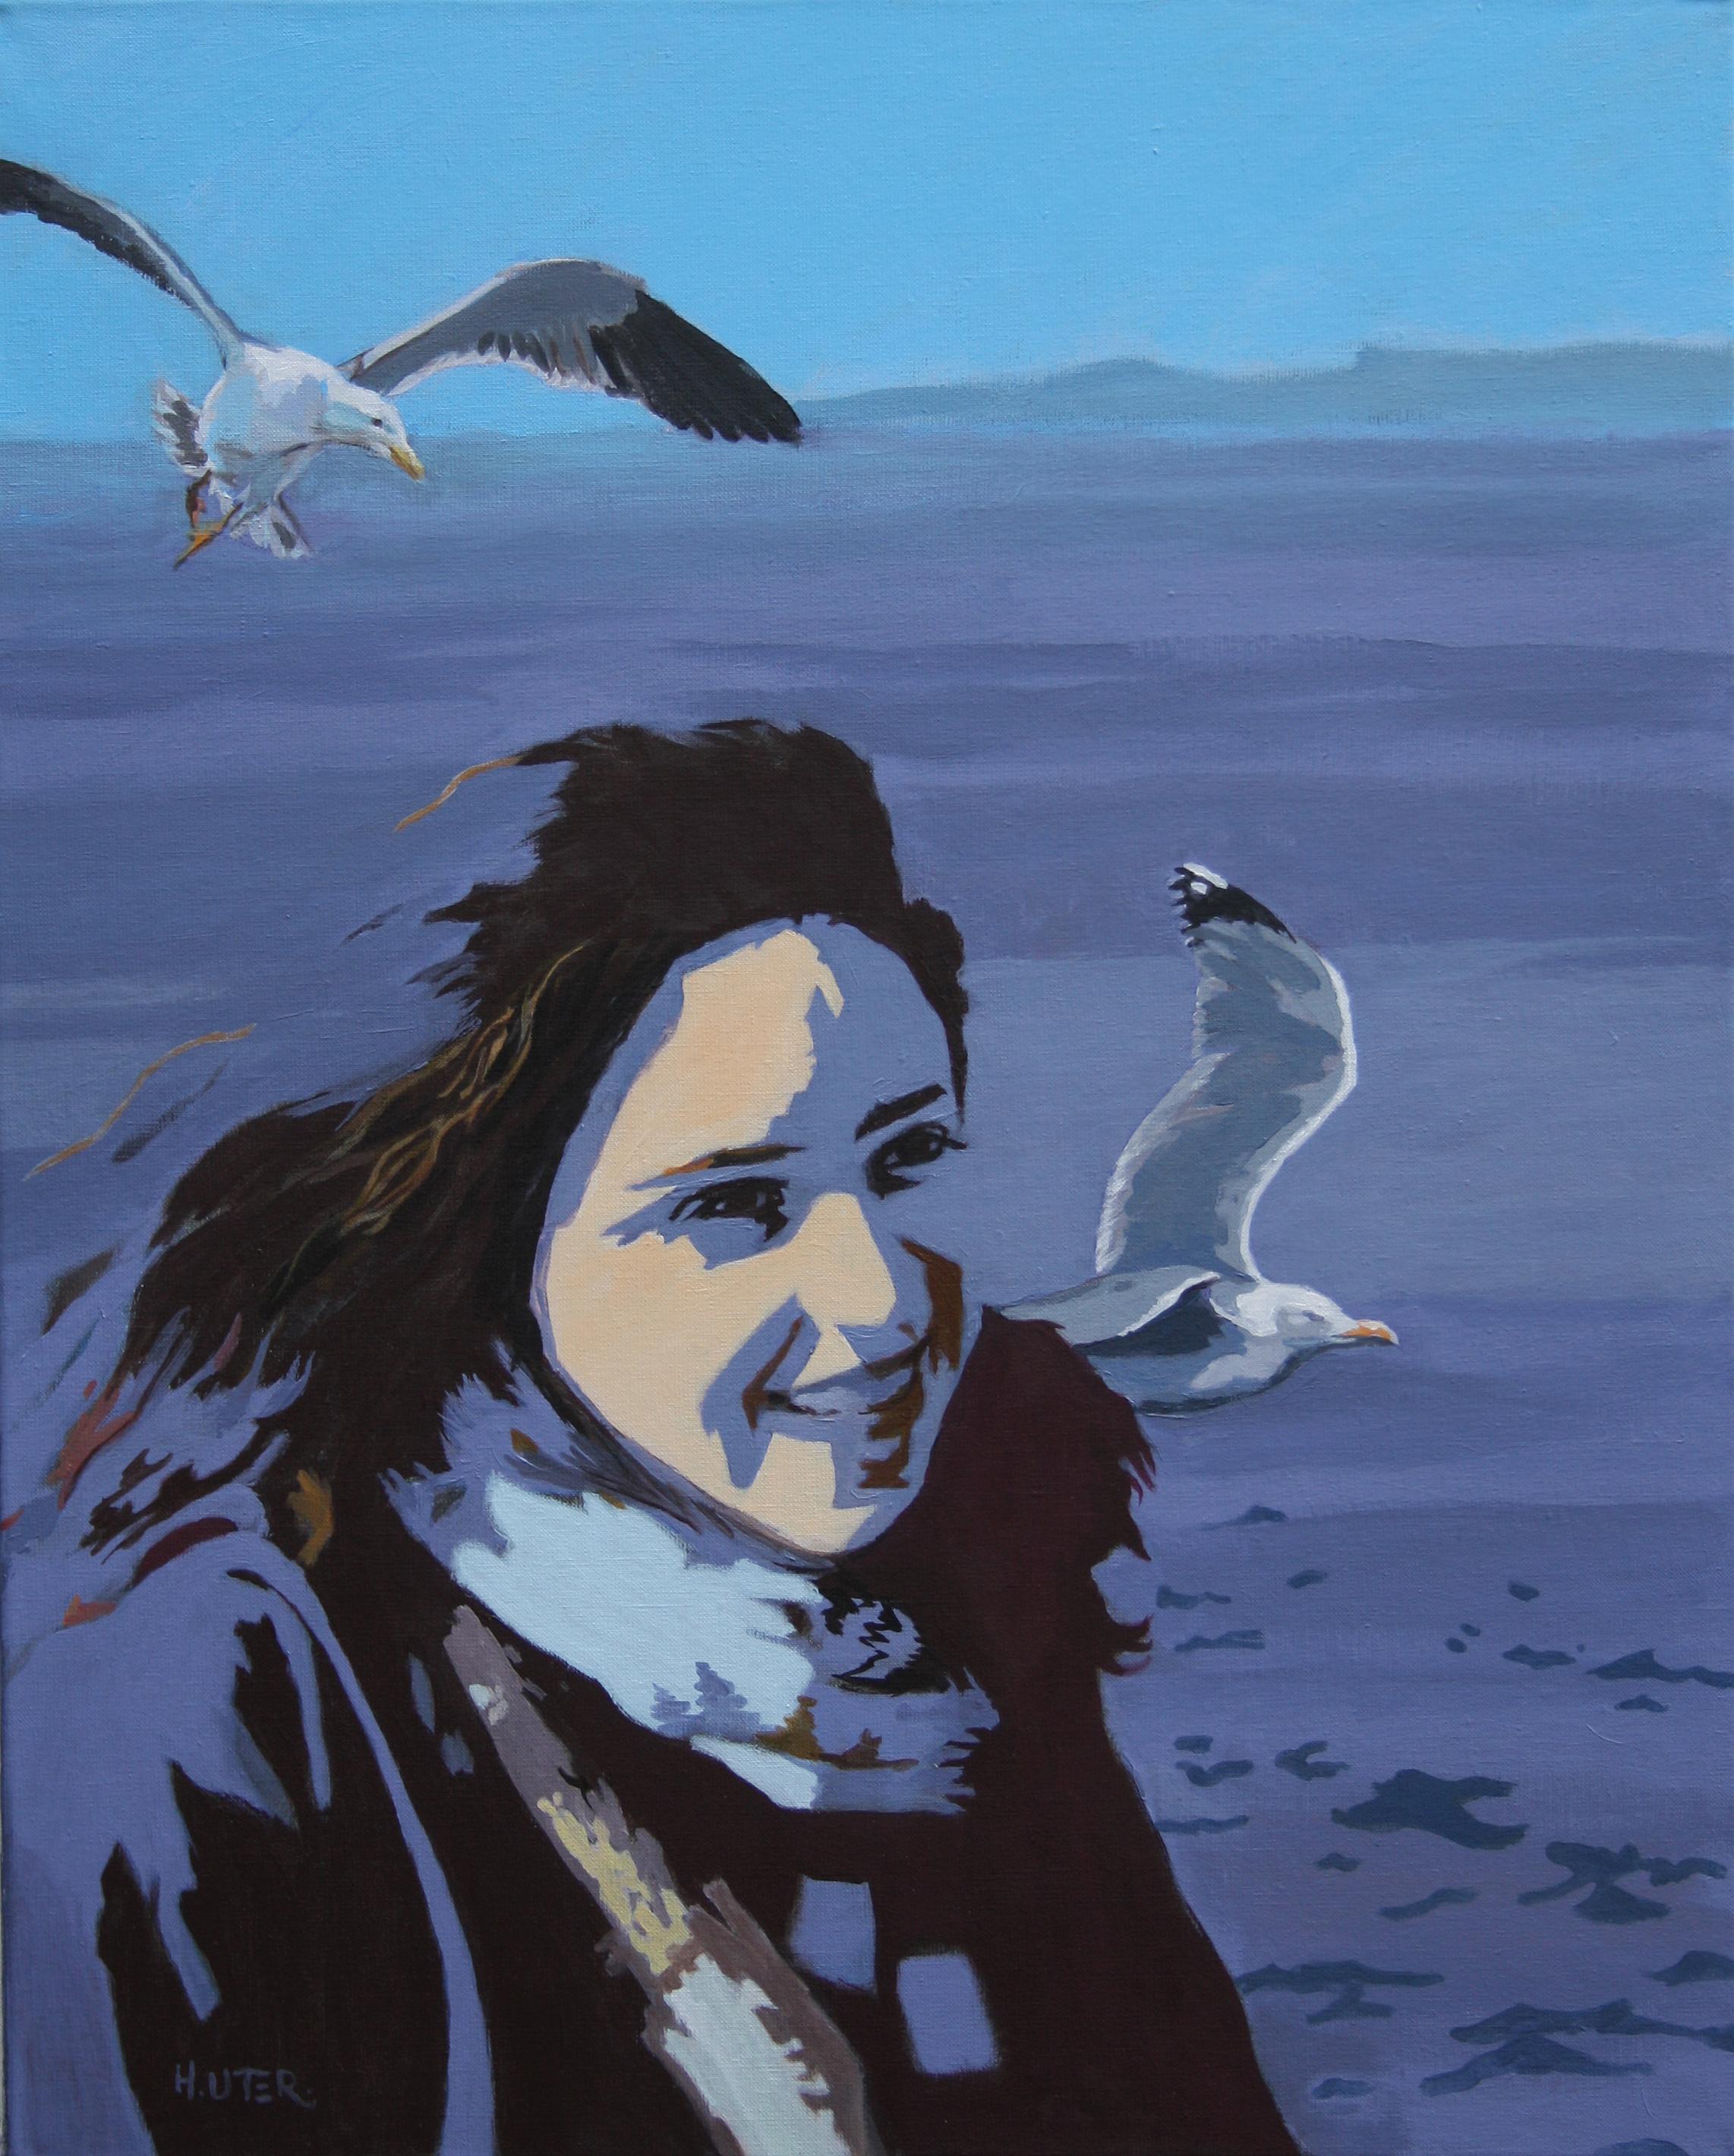 Acryl auf Leinwand

Helen Uter ist eine etablierte französisch-amerikanische Malerin, die 1955 geboren wurde und in Donnery, in der Nähe von Orléans, Frankreich, lebt und arbeitet. In ihren Werken, die stark von Edward Hopper beeinflusst sind, setzt